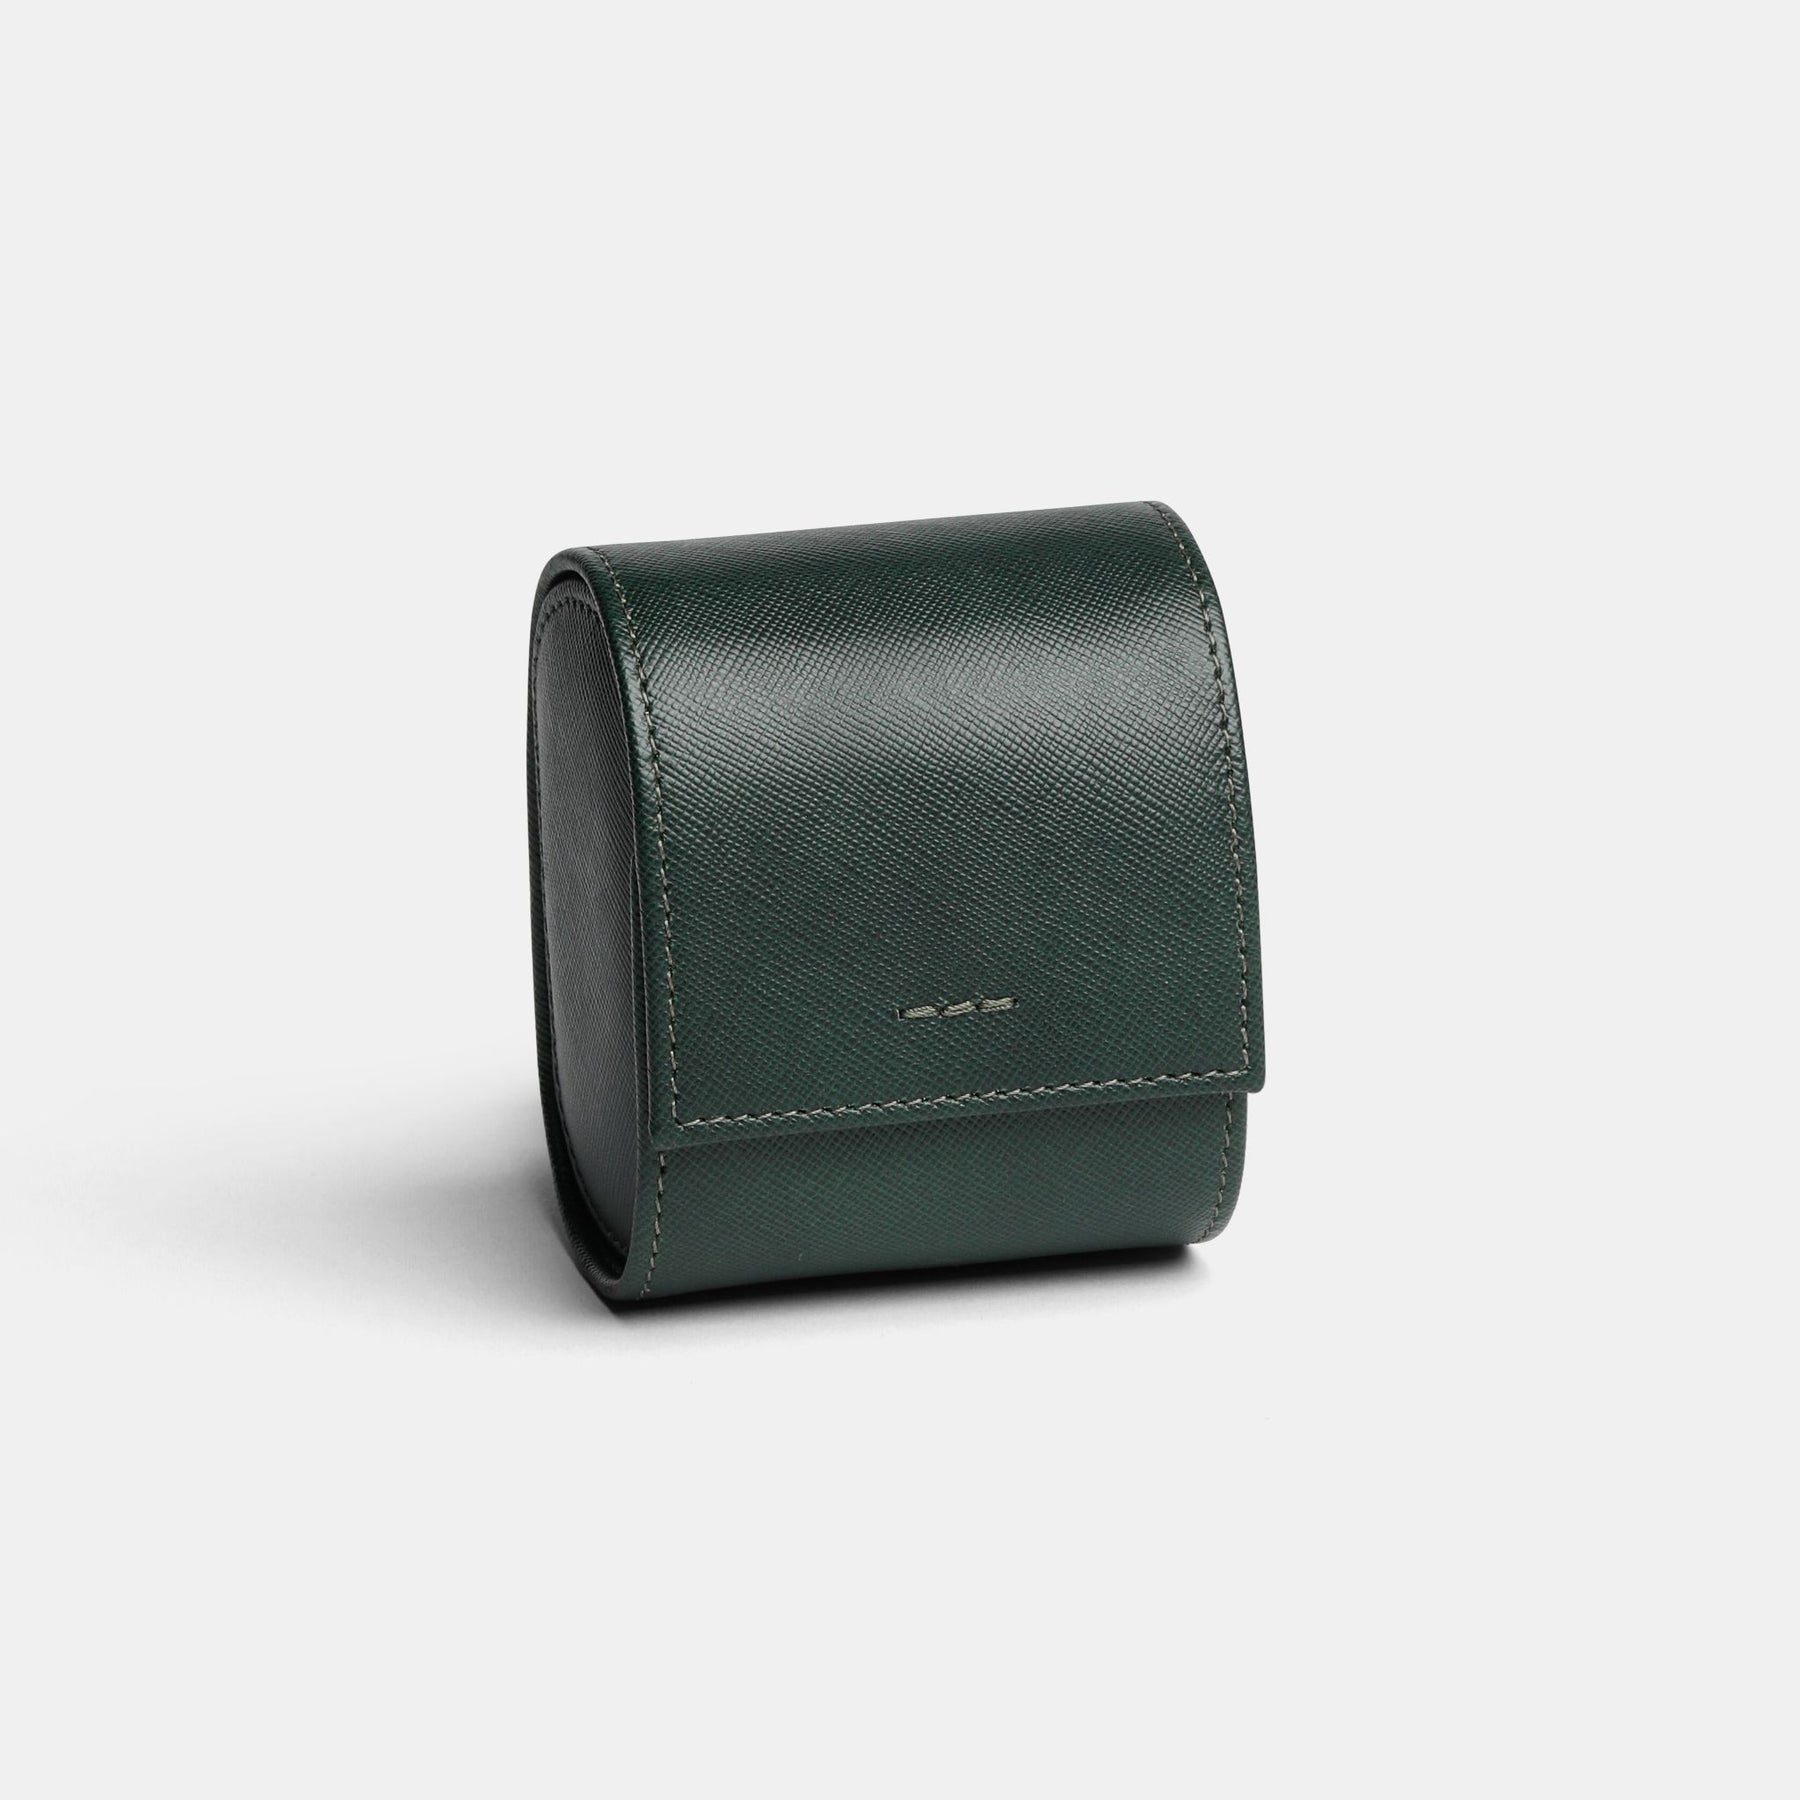 Roll porta orologi da 1 orologio in pelle saffiano verde con ricamo verde selva 